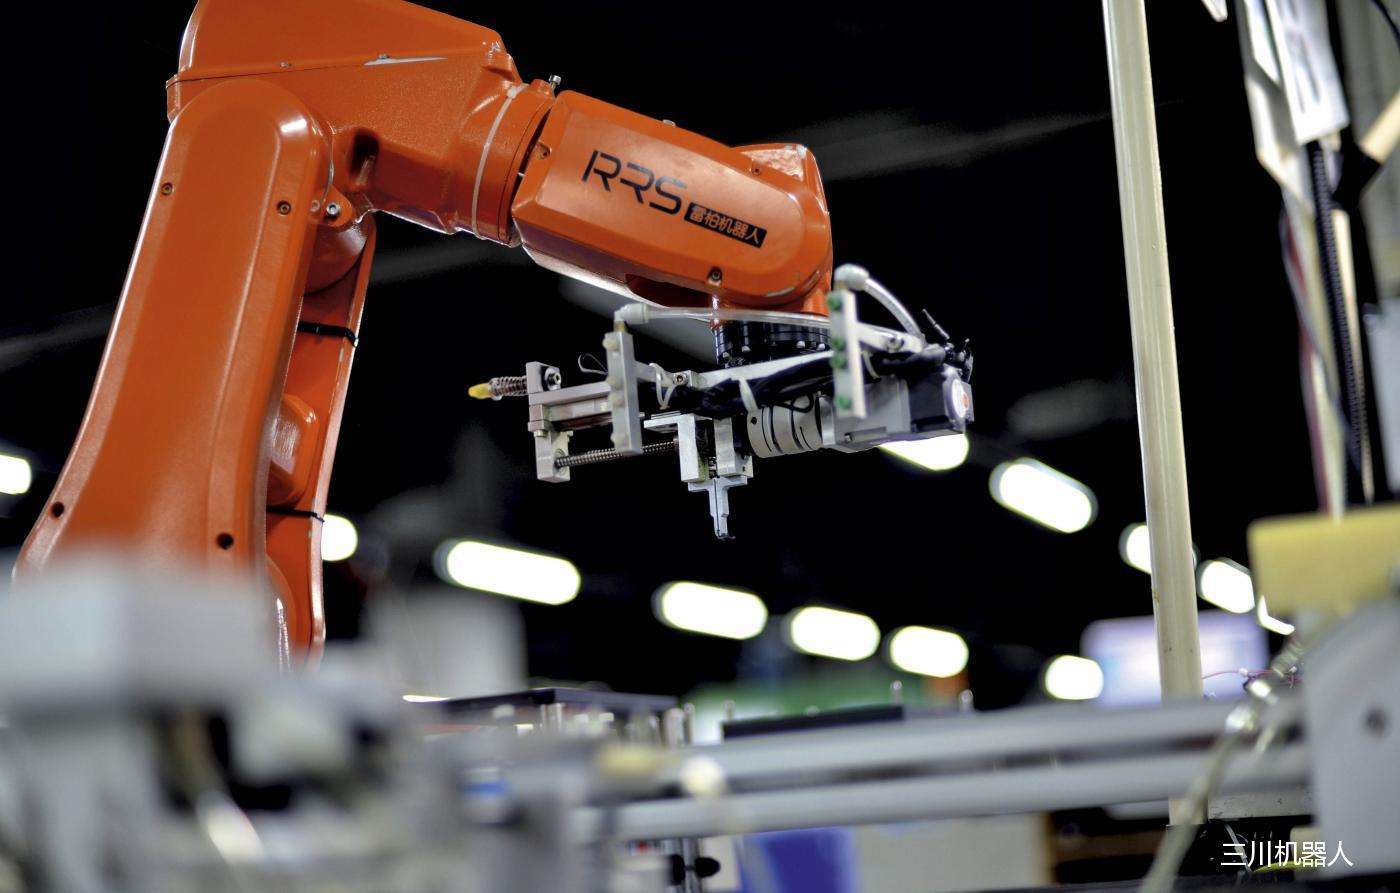 中国制造业自动化升级 工人学新技能以防被取代